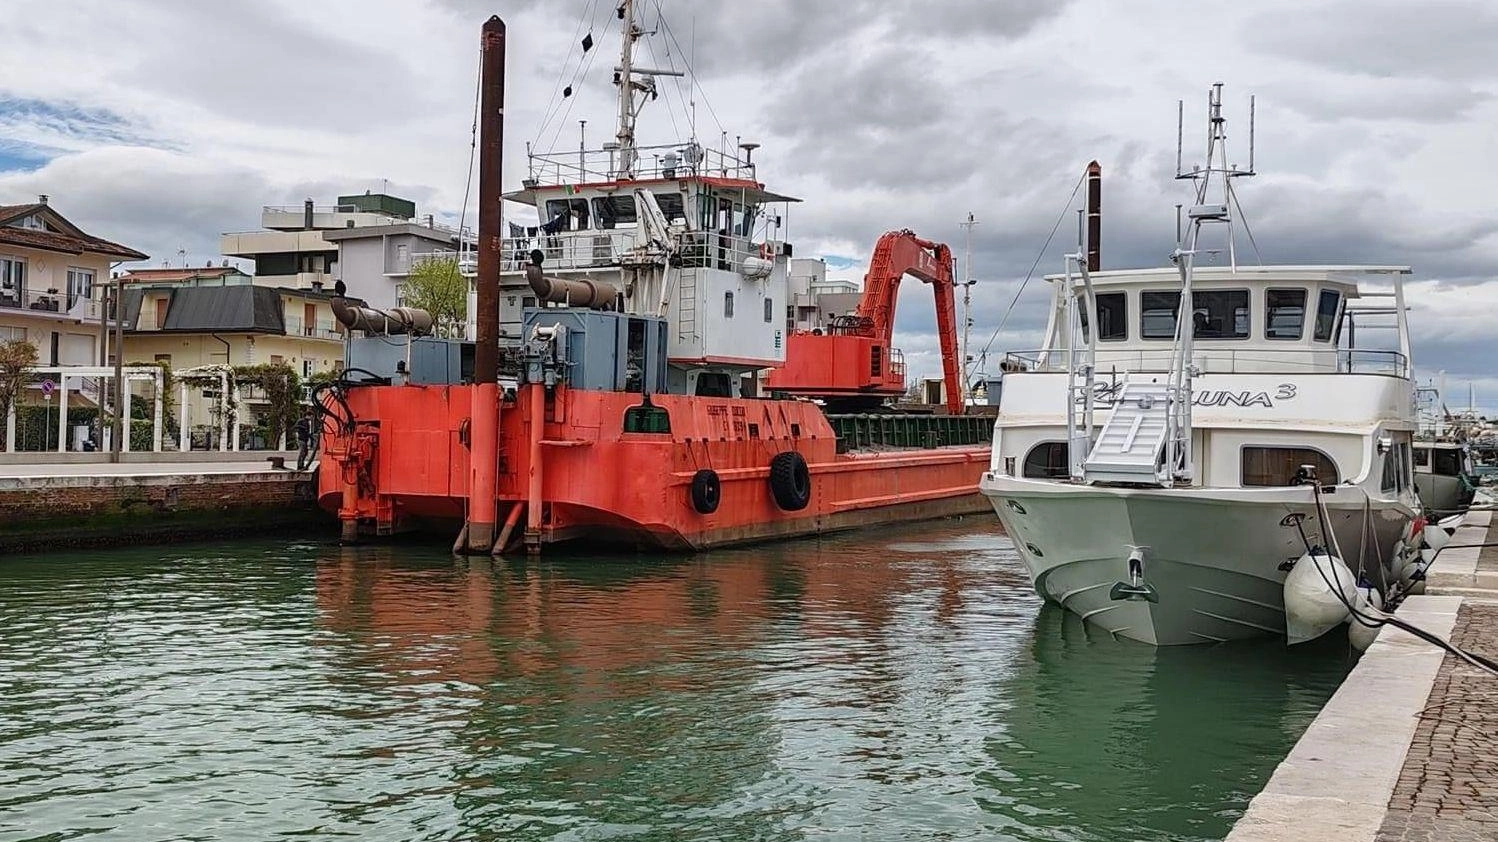 Il pontone de La Dragaggi che rimuove i (pochi) fanghi e la maxi-barca del Cantiere Morri destinata al trasporto turisti in Sardegna